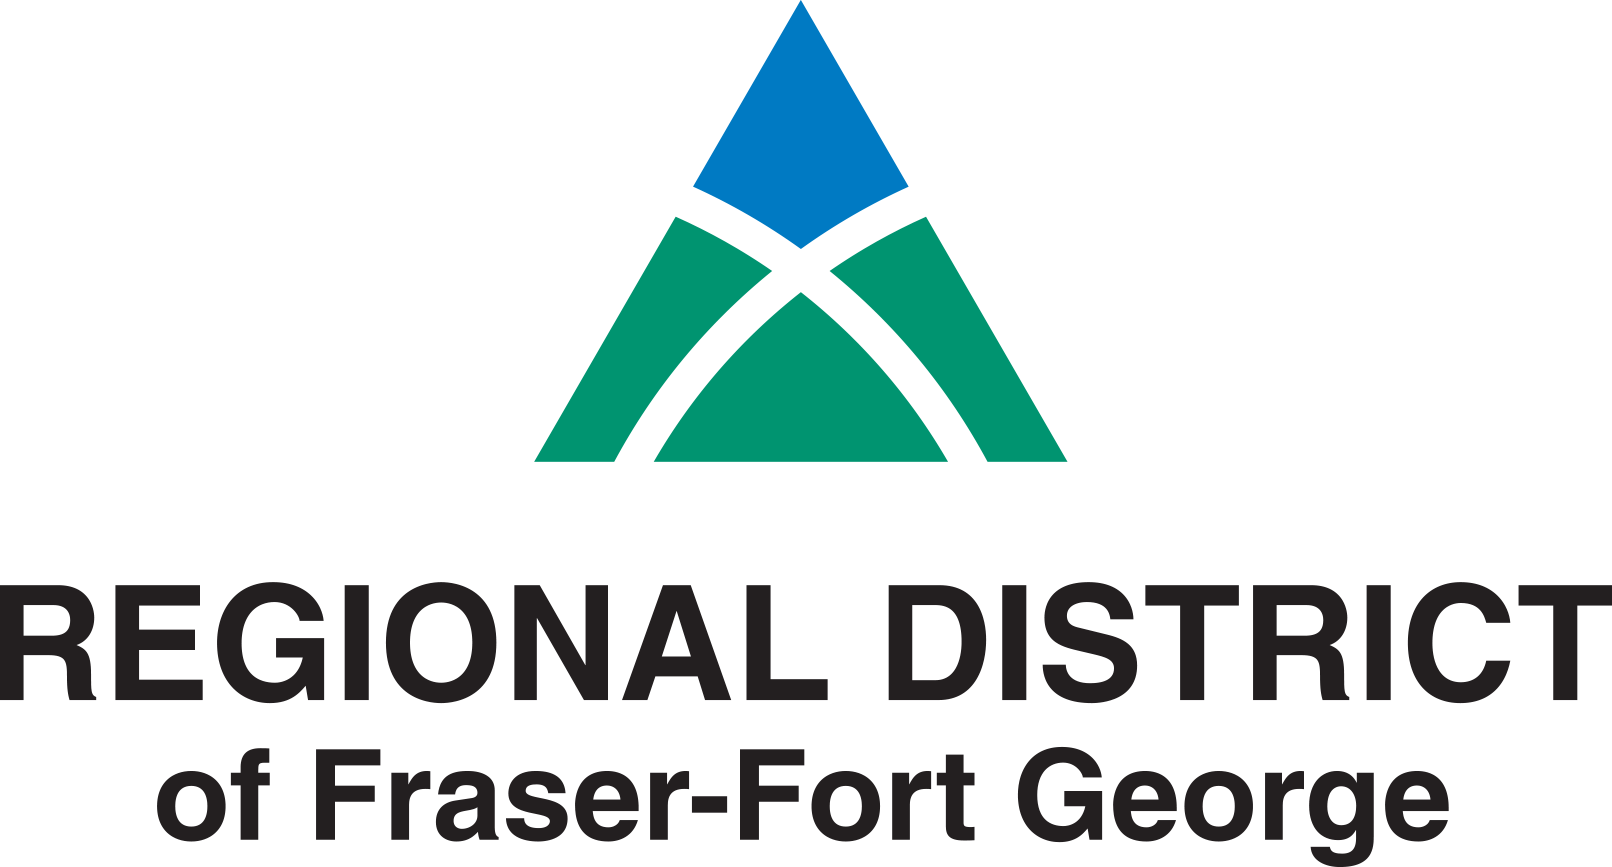 Regional District of Fraser-Fort George